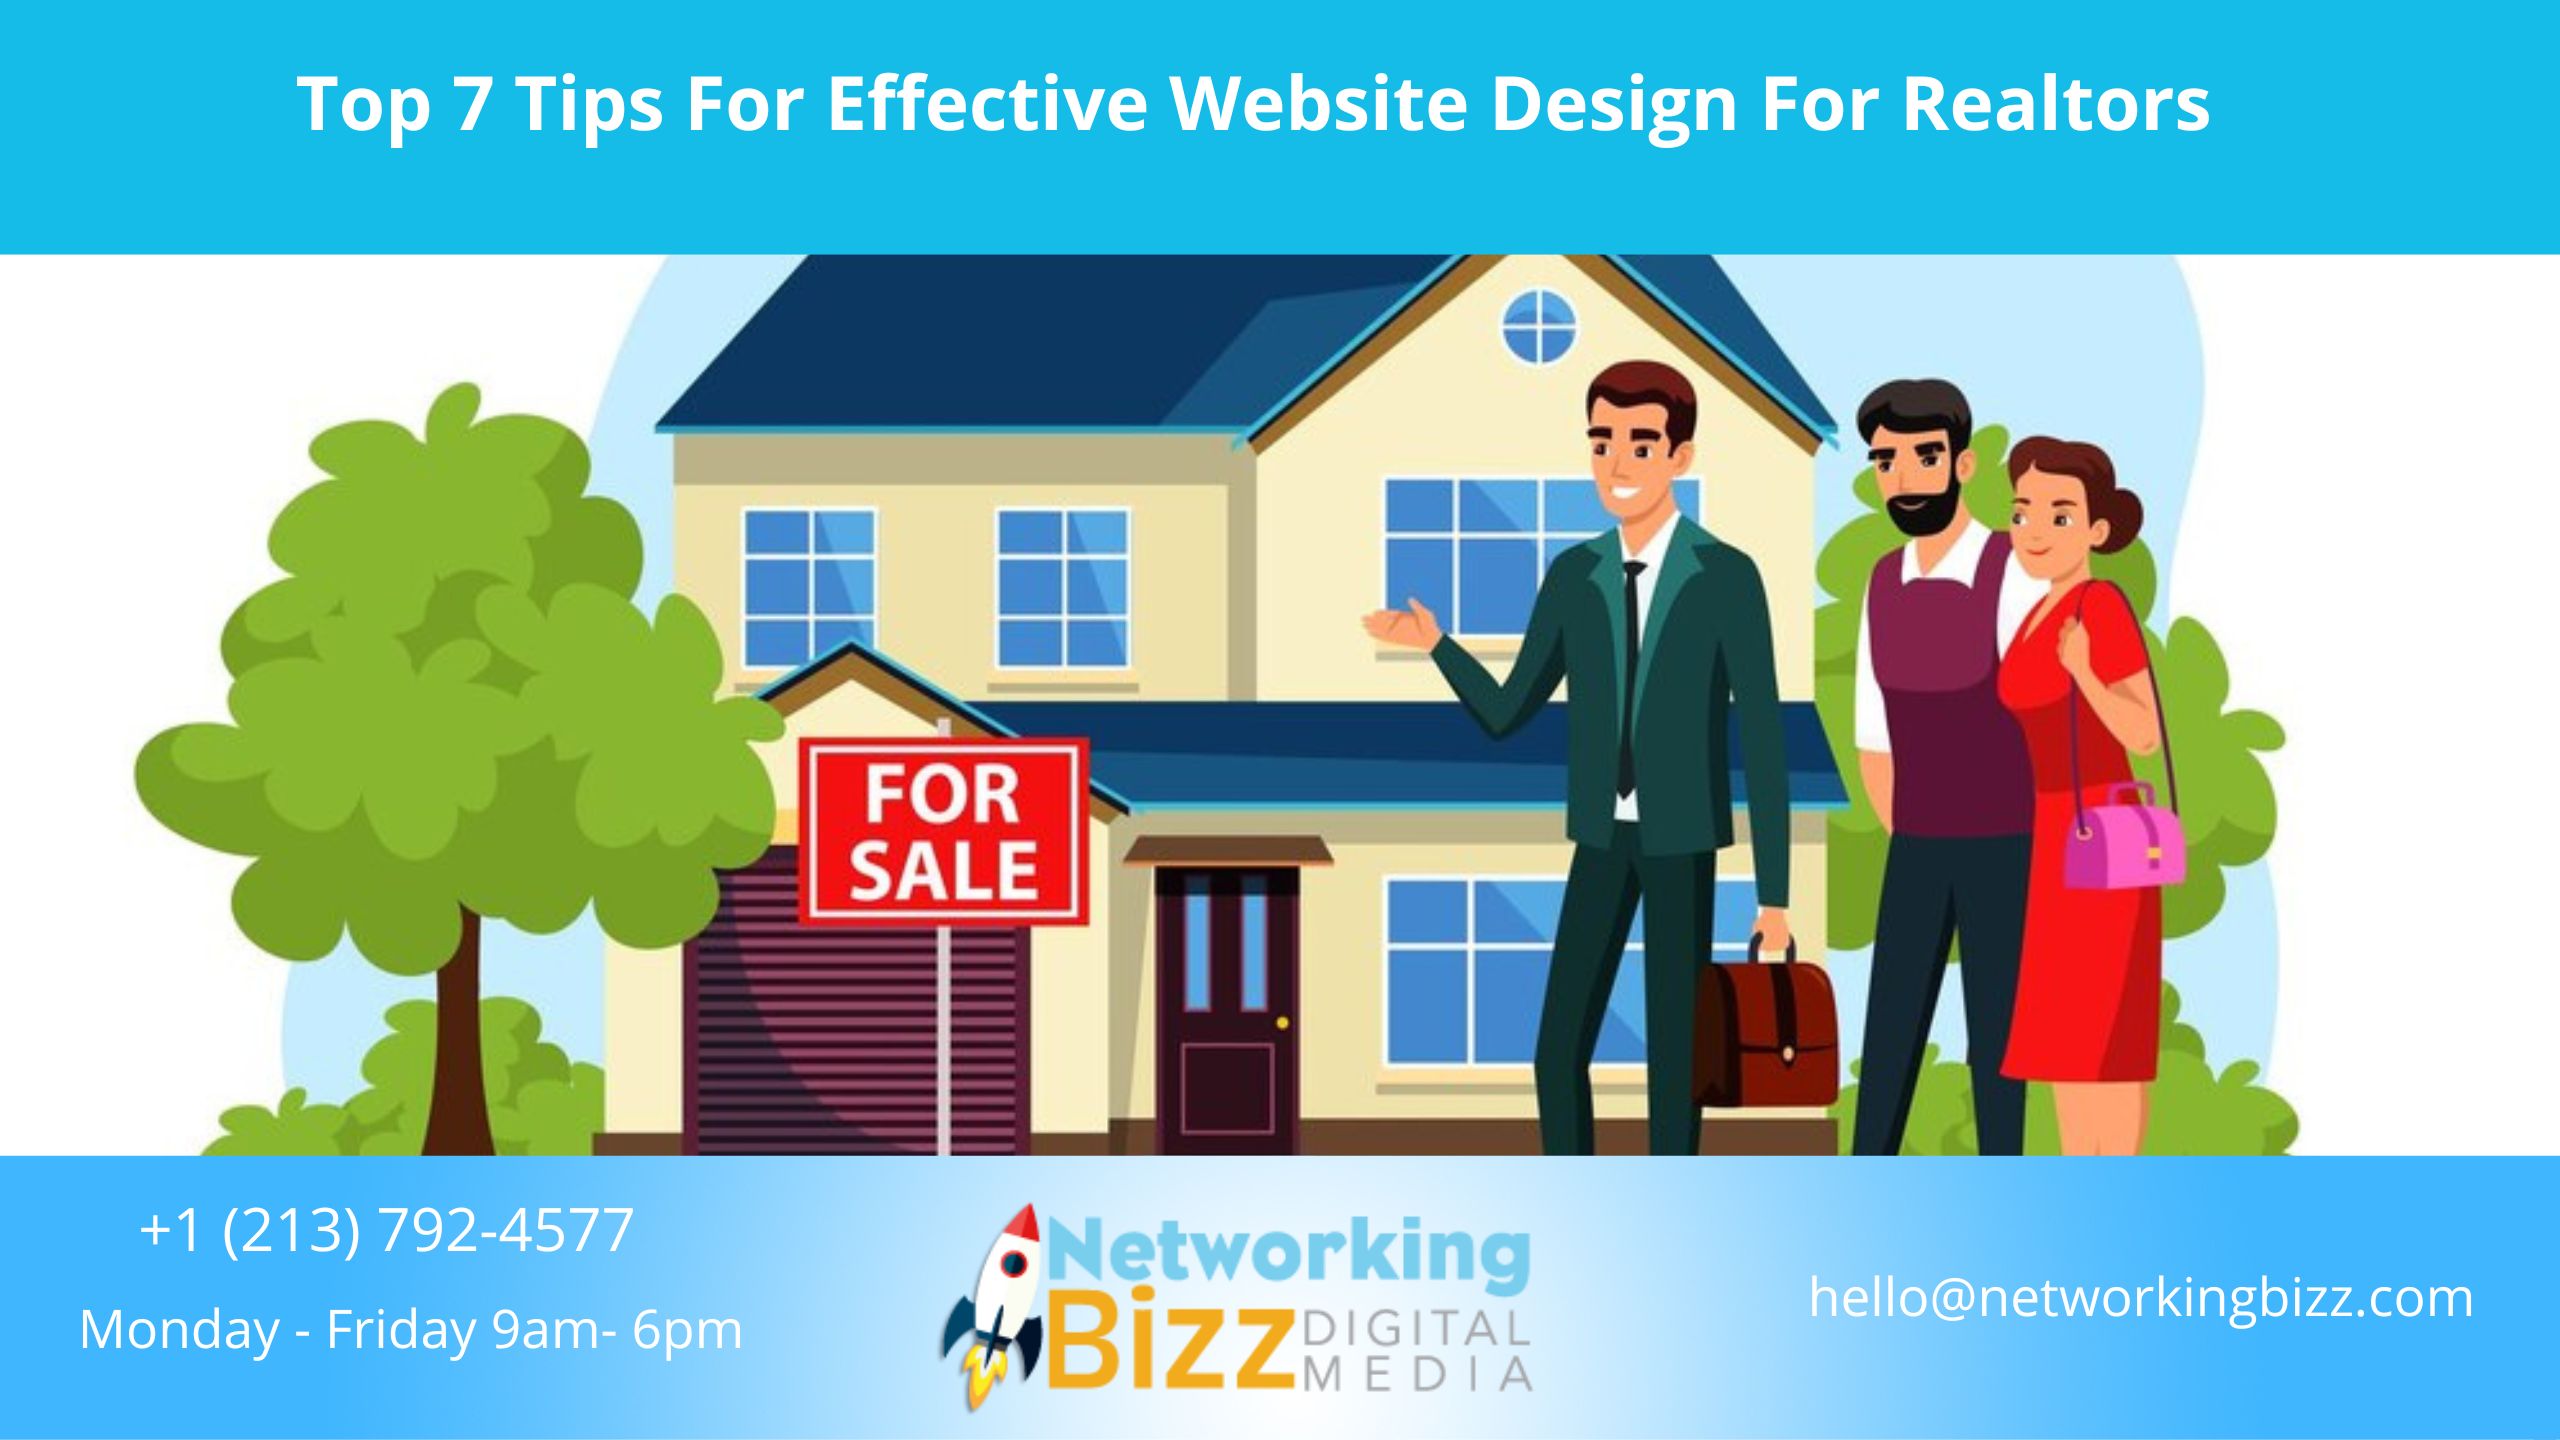 Top 7 Tips For Effective Website Design For Realtors